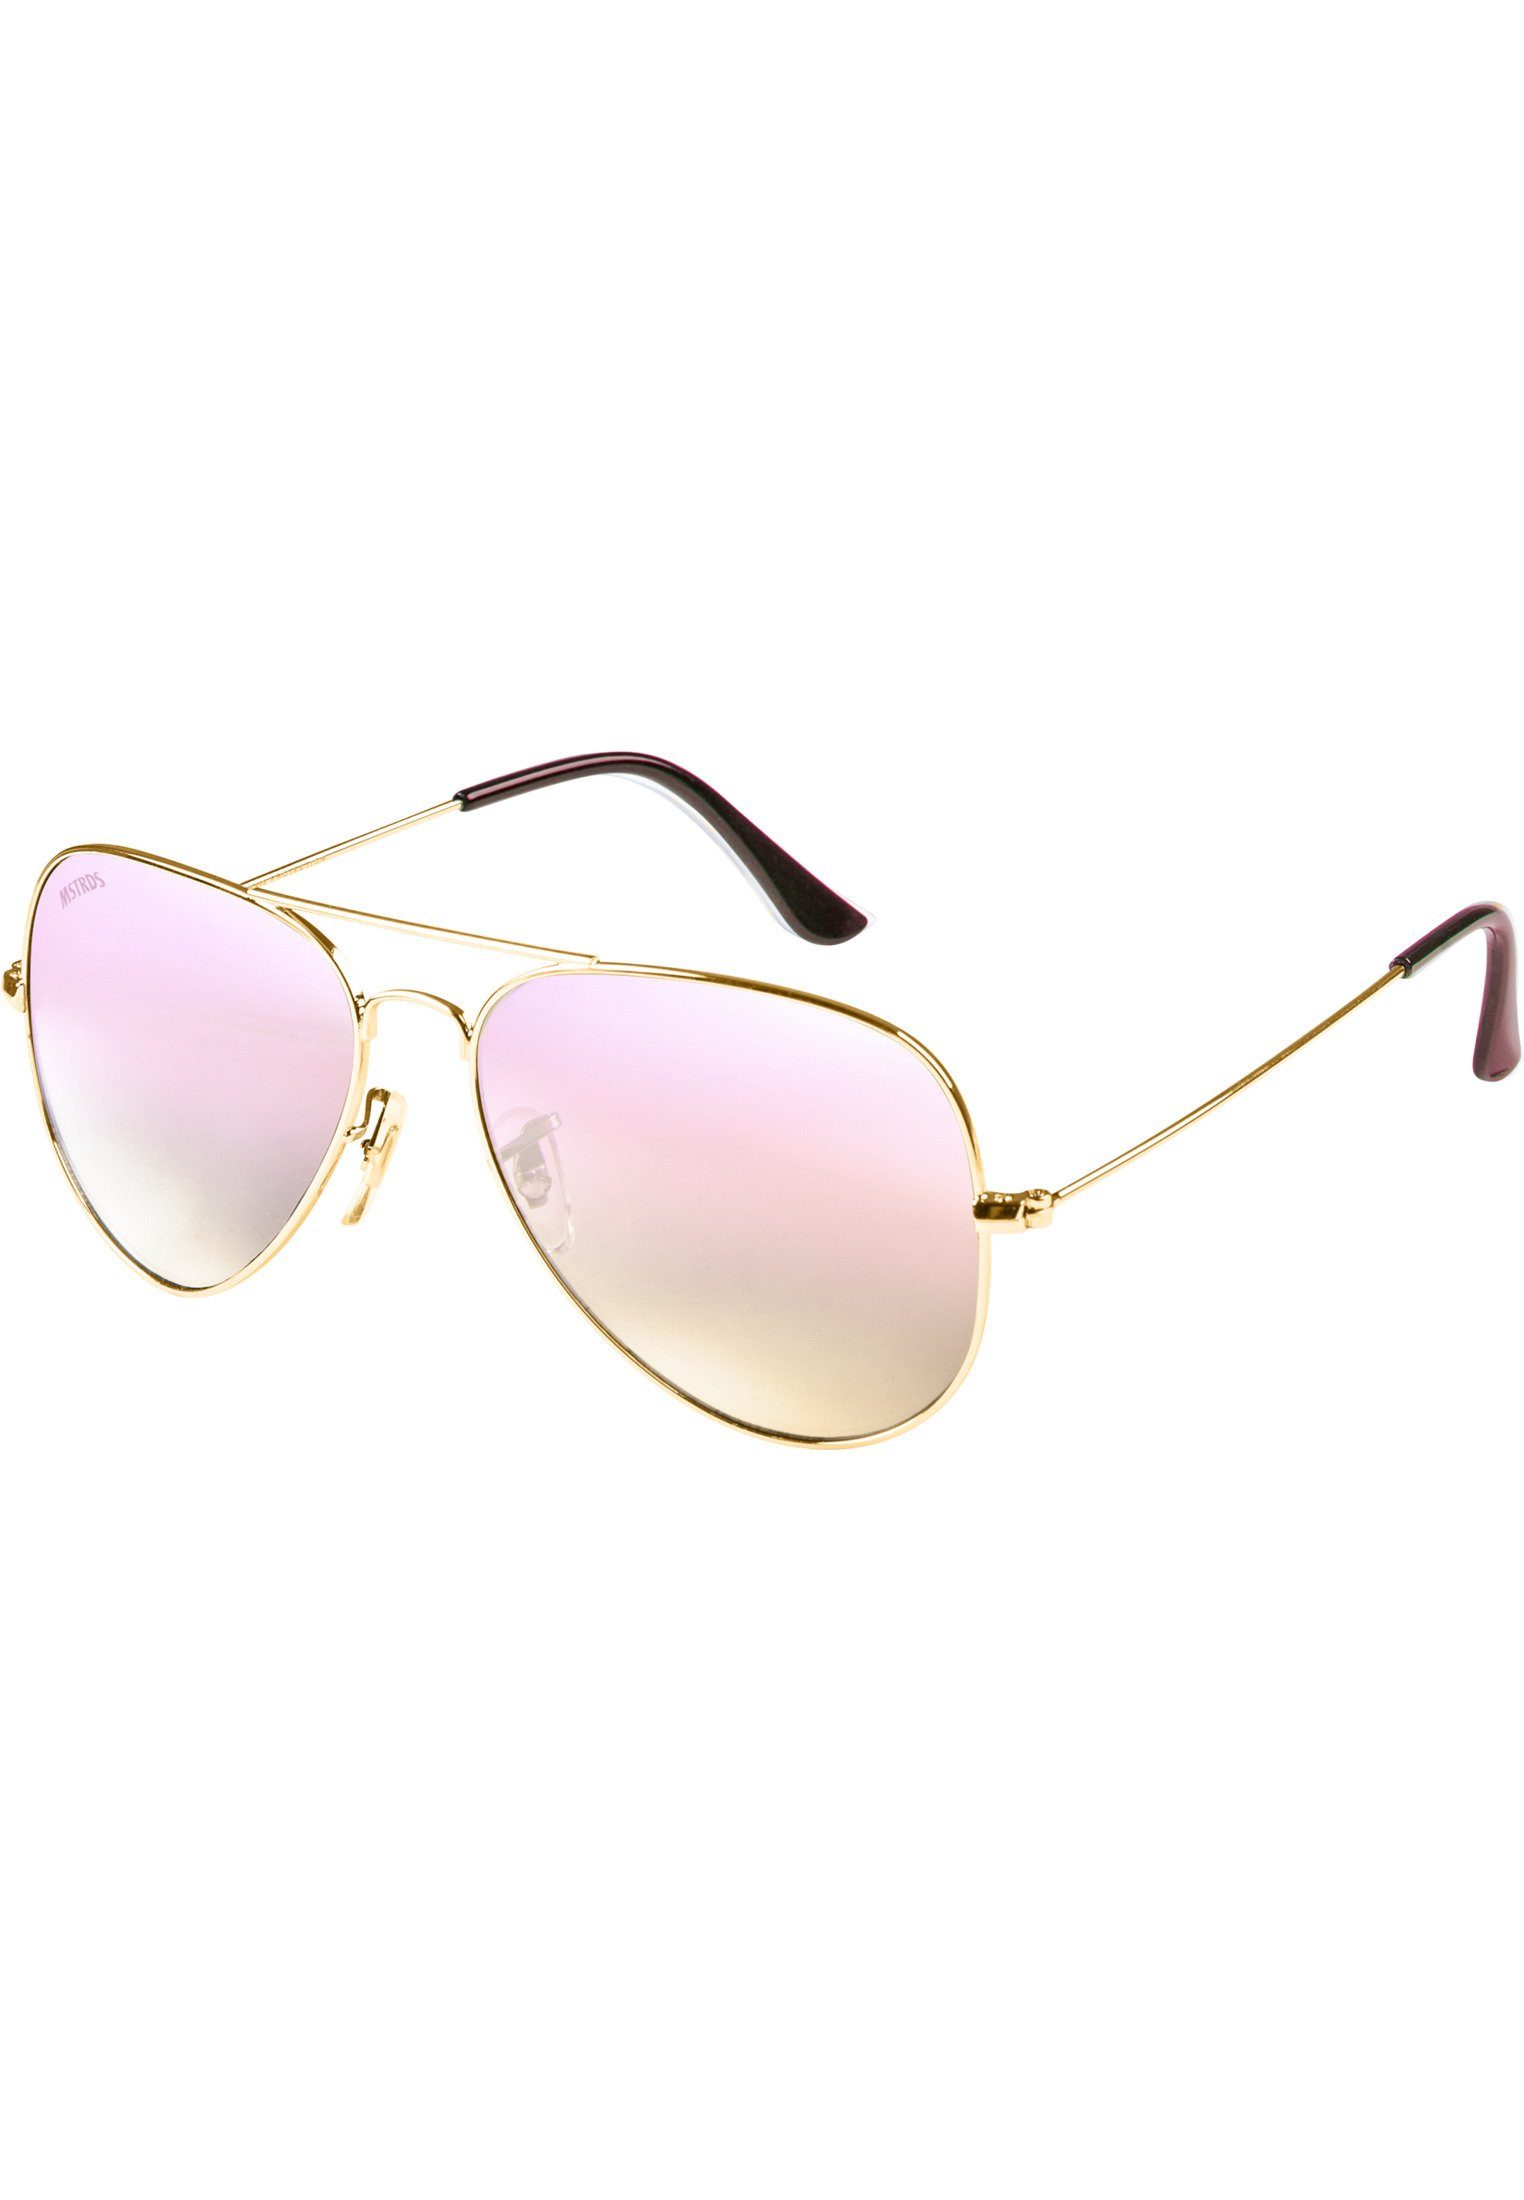 Accessoires PureAv Sonnenbrille MSTRDS gold/rosé Youth Sunglasses